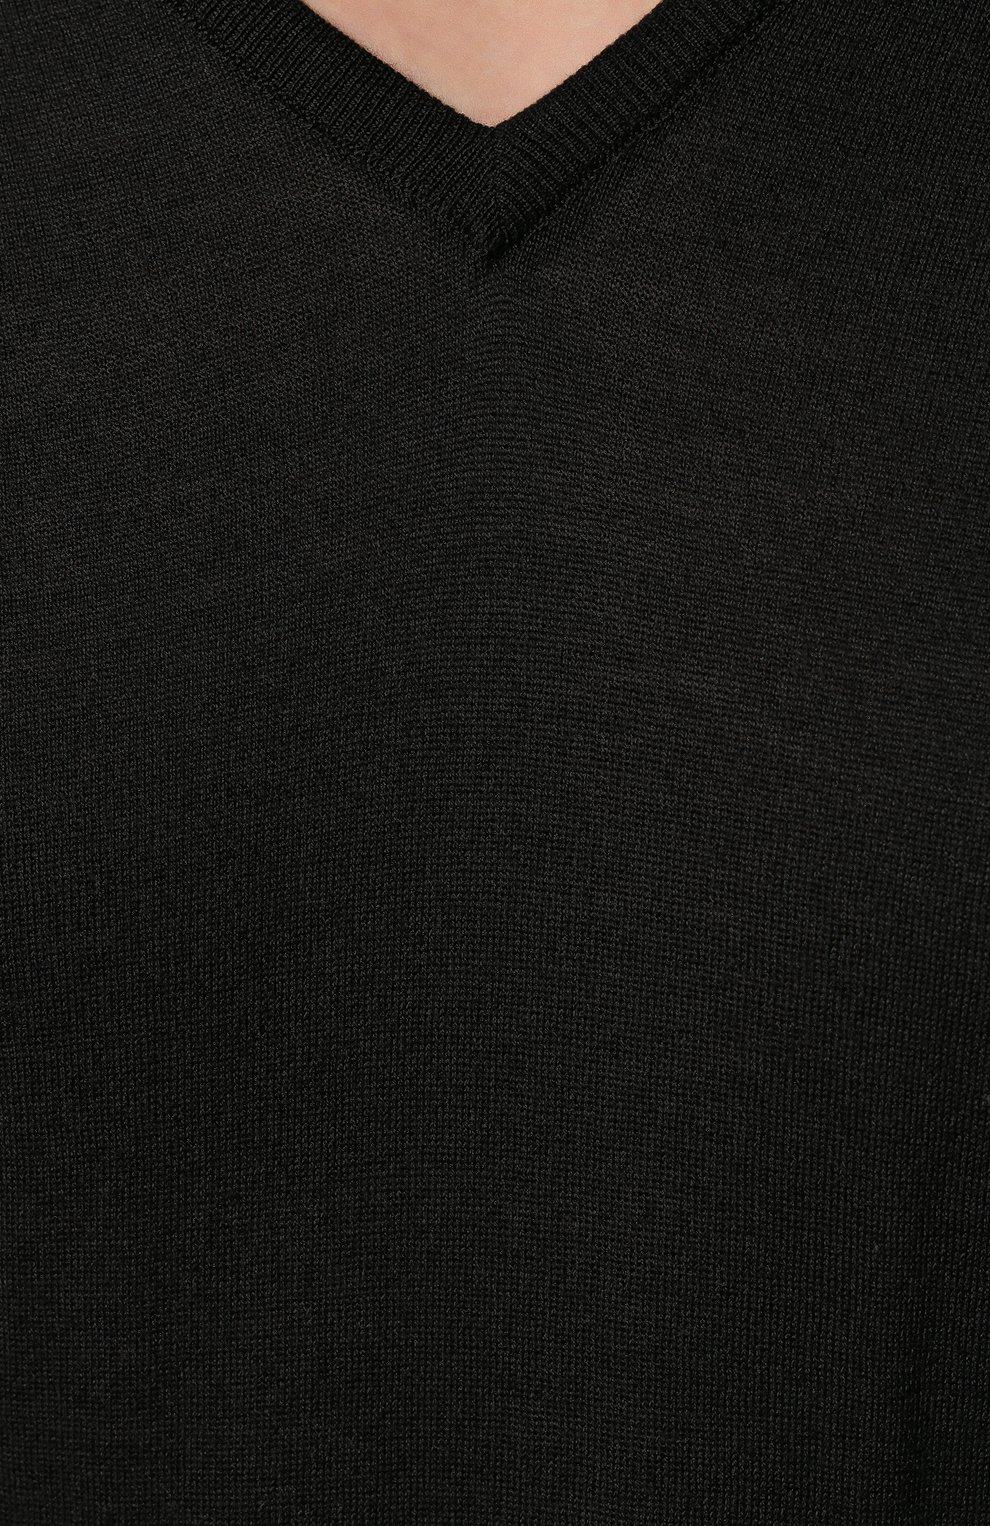 Мужской пуловер из шерсти и хлопка JOHN SMEDLEY черного цвета, арт. CBLENHEIM | Фото 5 (Материал внешний: Шерсть, Хлопок; Рукава: Длинные; Принт: Без принта; Длина (для топов): Стандартные; Вырез: V-образный; Мужское Кросс-КТ: Пуловеры; Стили: Кэжуэл)